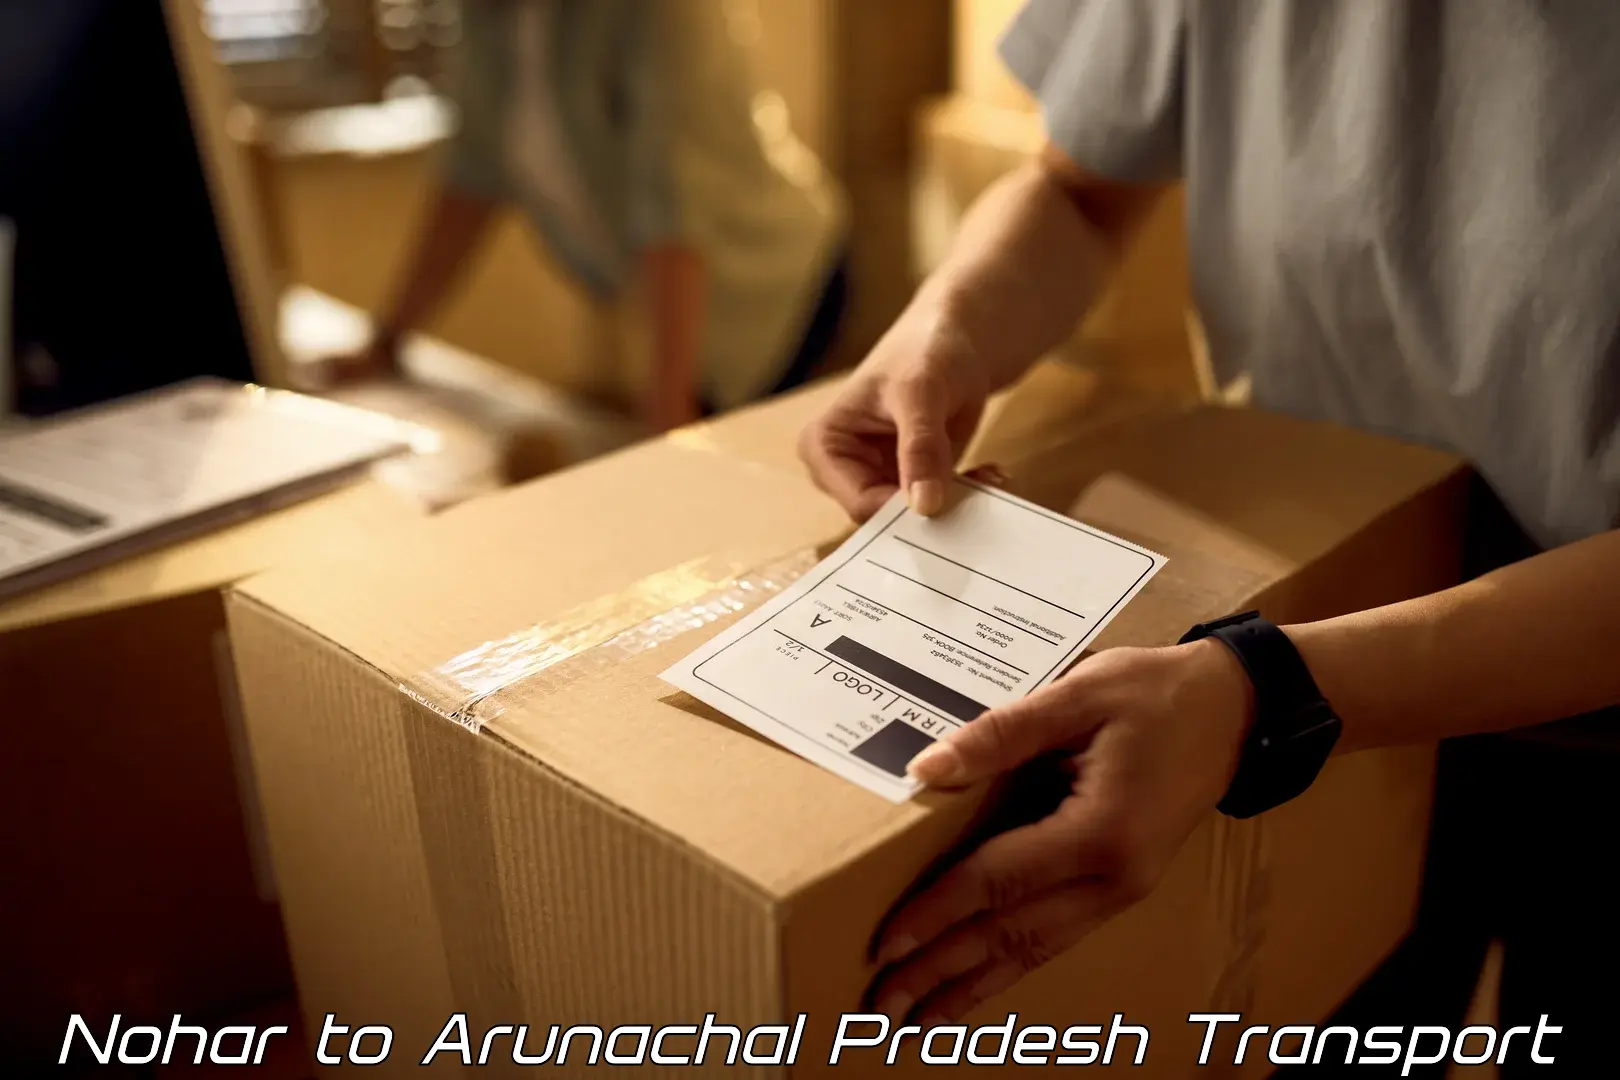 Two wheeler transport services Nohar to Arunachal Pradesh